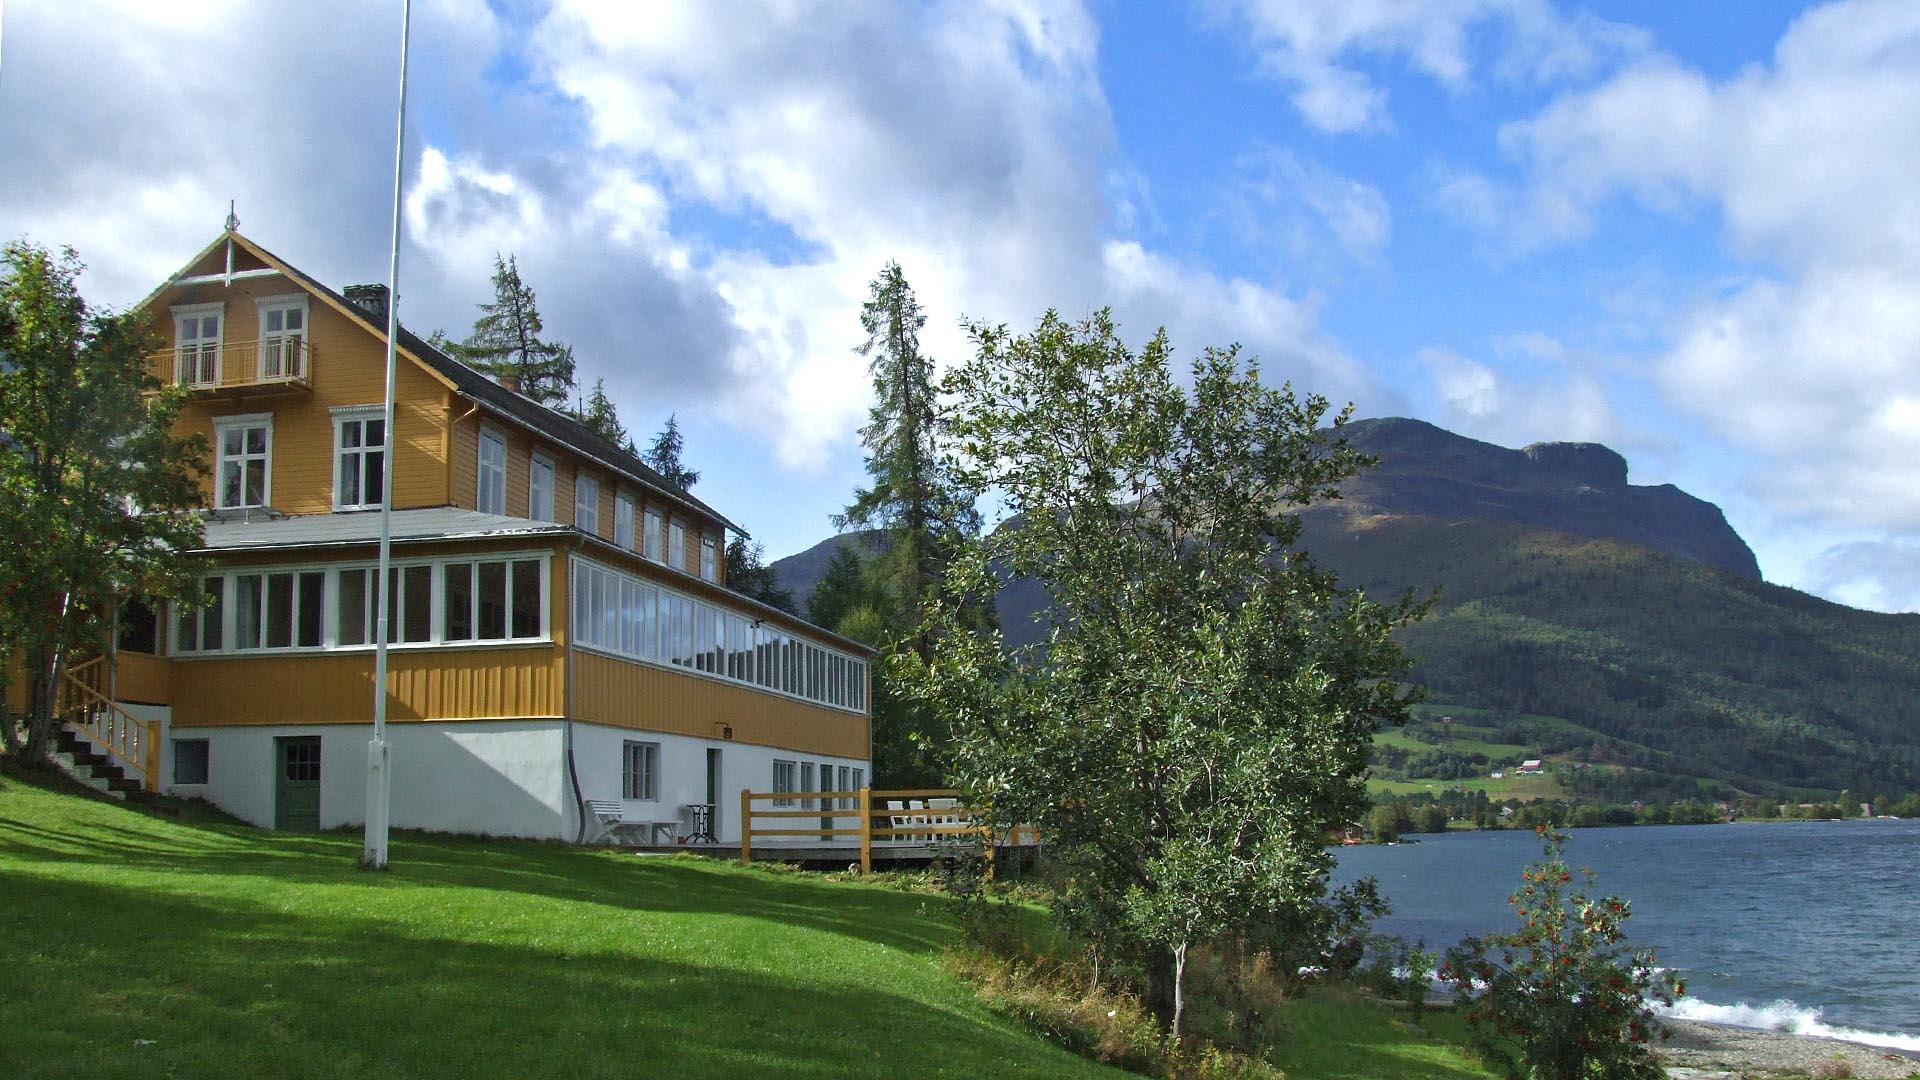 Ein hübsches kleines gelbgestrichenes Holzhotel an einem Seeufer mit Rasen im Vorder- und einem Berg im Hintergrund